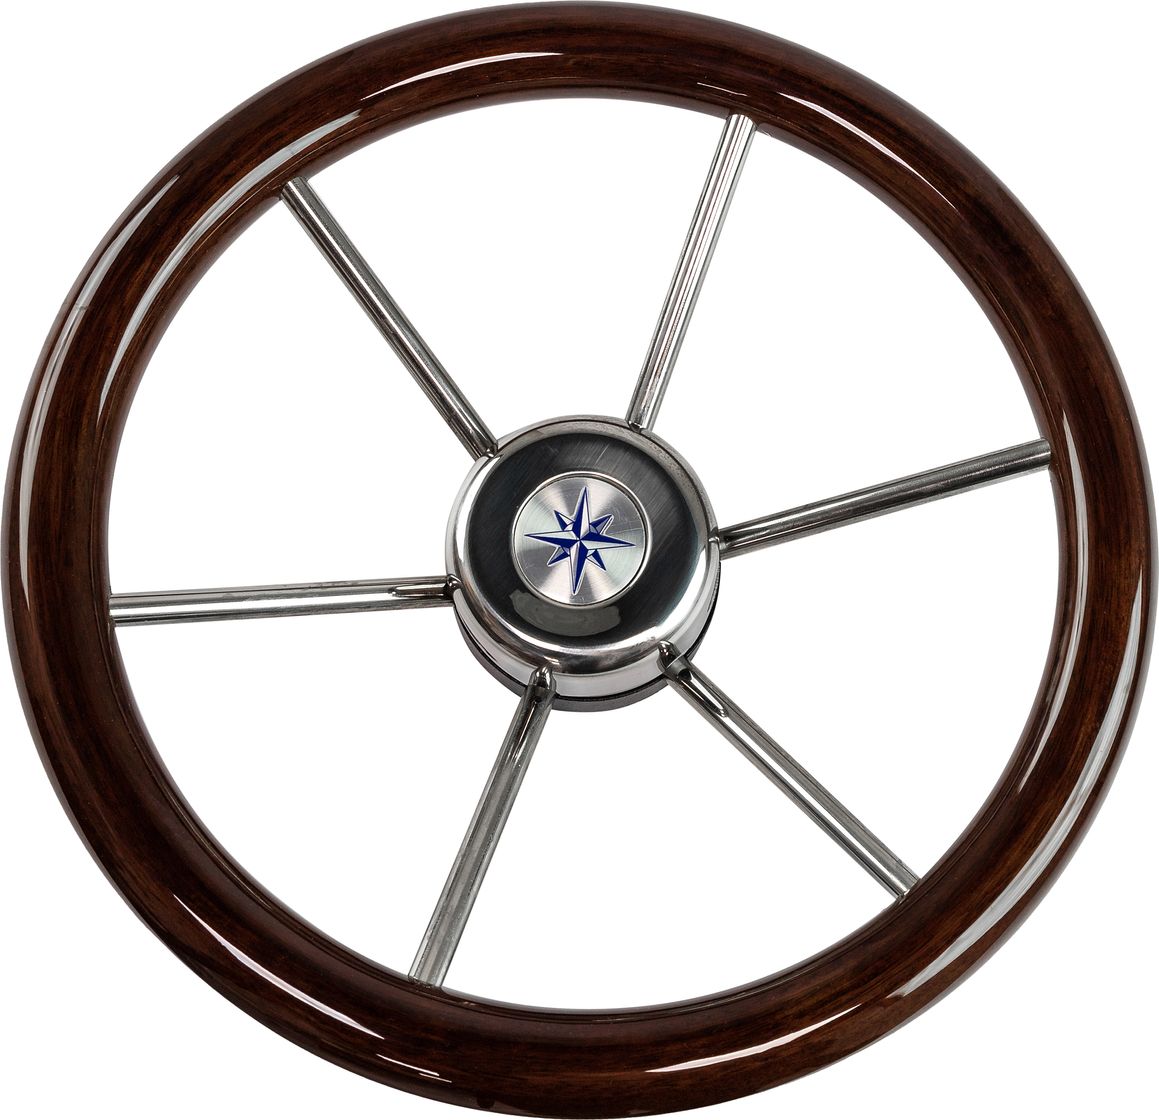 Рулевое колесо LEADER WOOD деревянный обод серебряные спицы д. 340 мм VN7340-33 рулевое колесо leader wood деревянный обод серебряные спицы д 360 мм vn7360 33